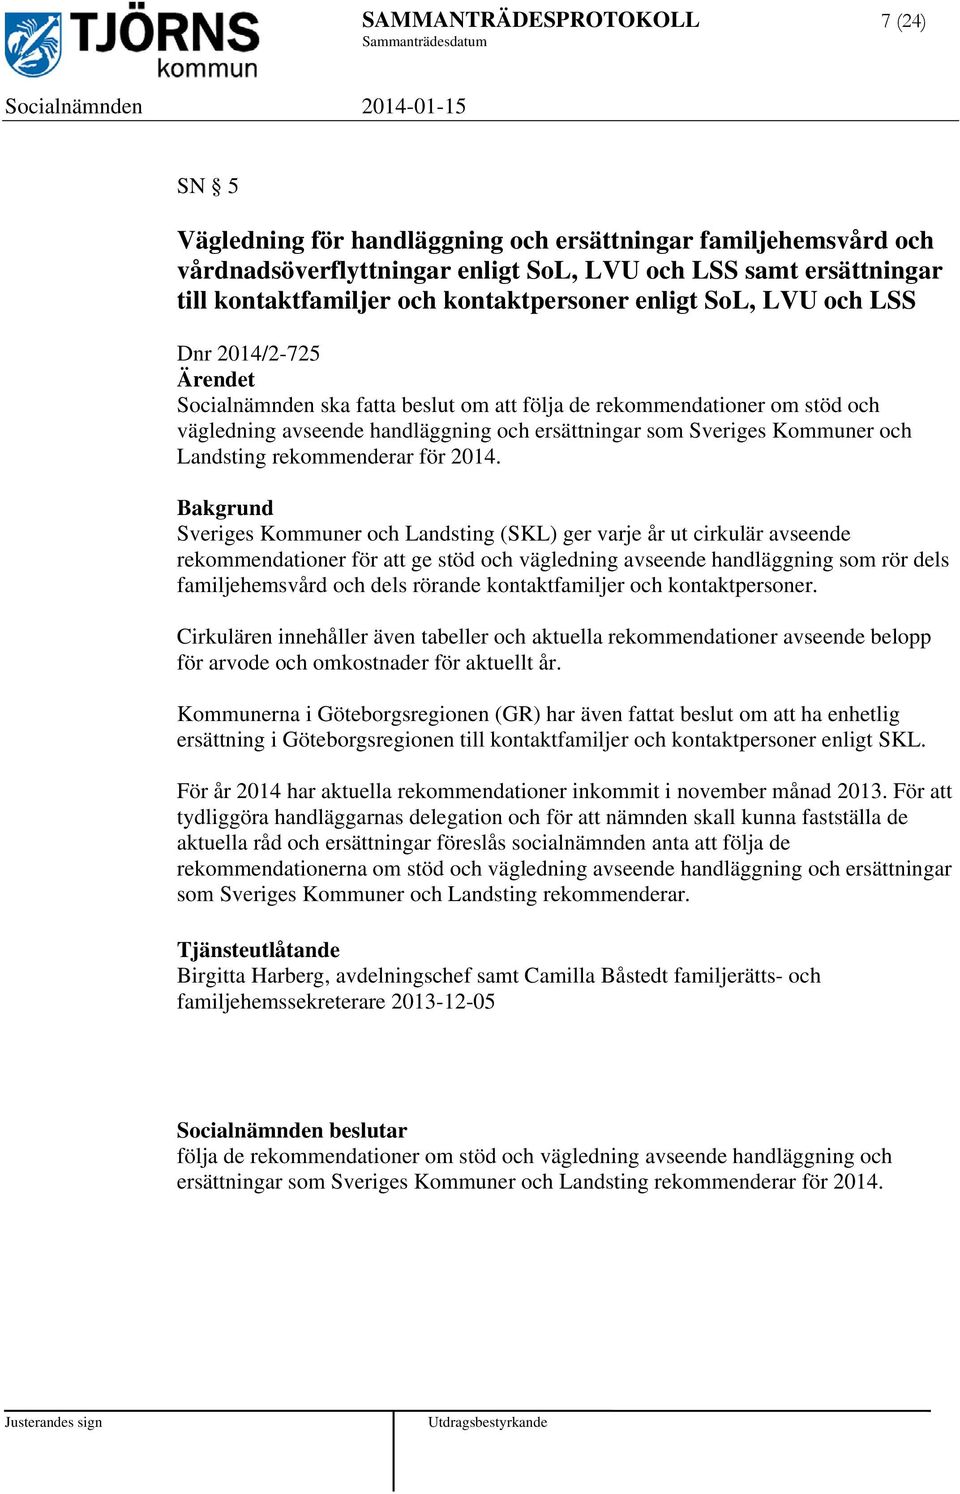 ersättningar som Sveriges Kommuner och Landsting rekommenderar för 2014.